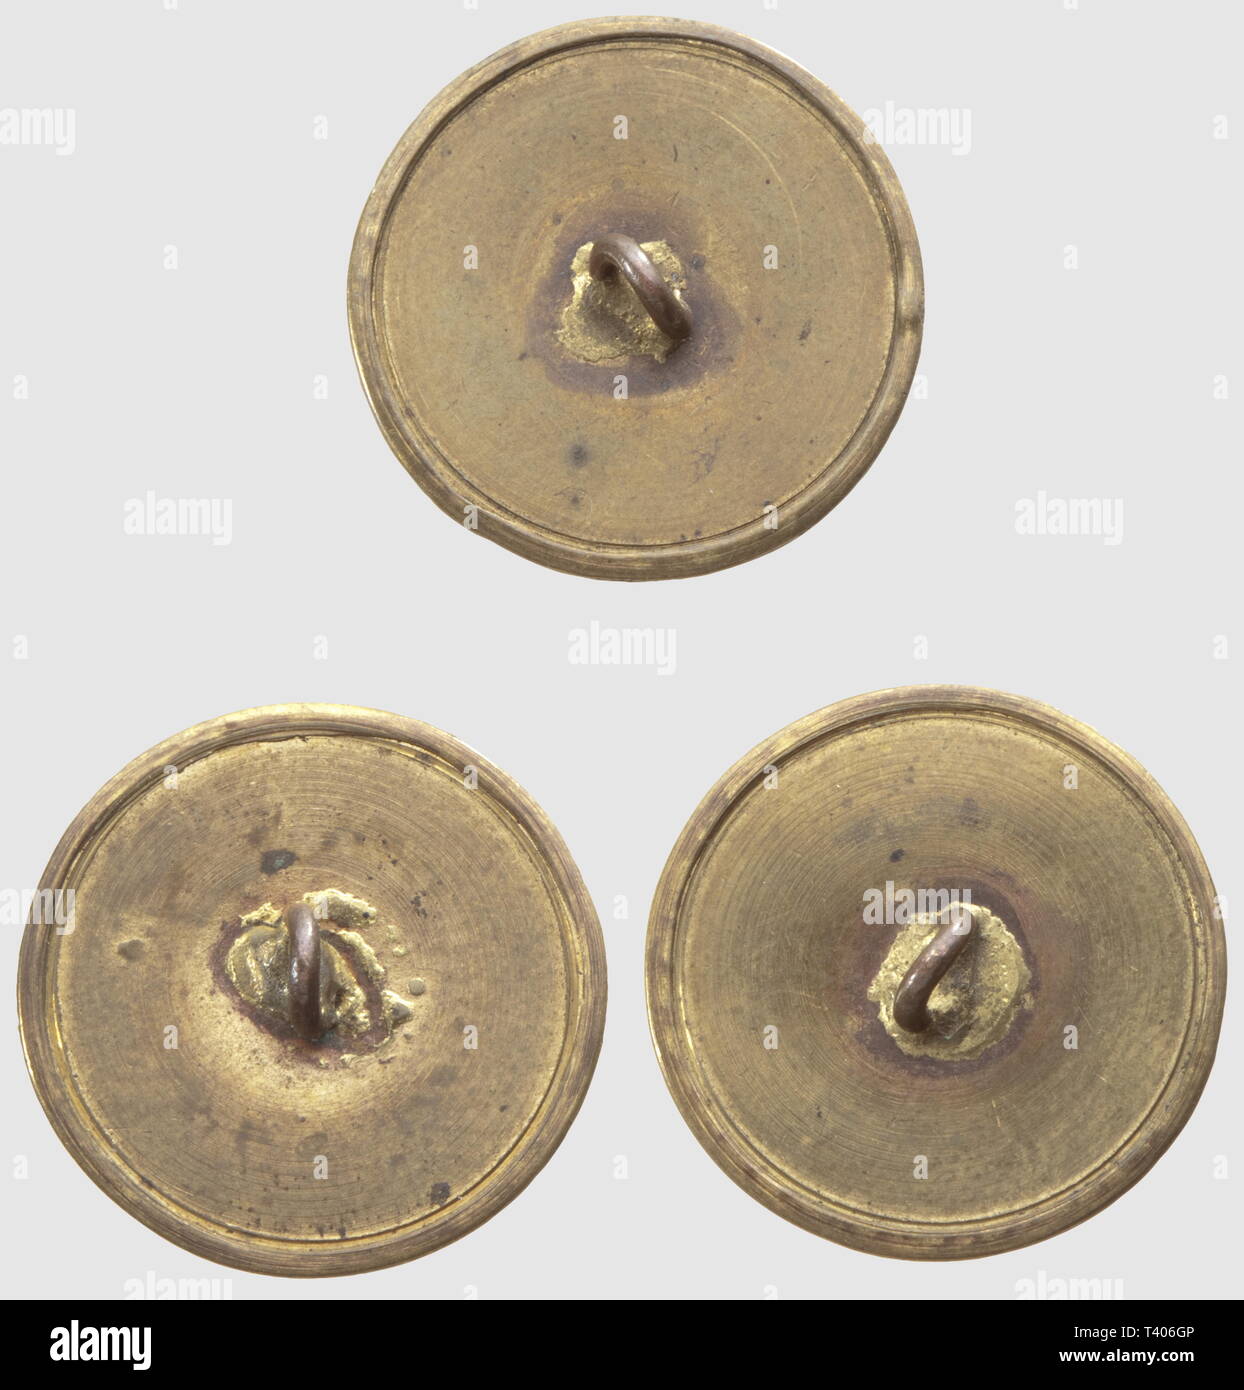 DIRECTOIRE - CONSULAT - EMPIRE 1795-1814, Trois boutons de la Maison de l'Empereur, (1er Empire). Modèle destiné à la Tenue des chambellans, Modul plat serti, en cuivre Doré. Très Bon état. Diamètre 2,4 cm, Additional-Rights - Clearance-Info - Not-Available Stockfoto